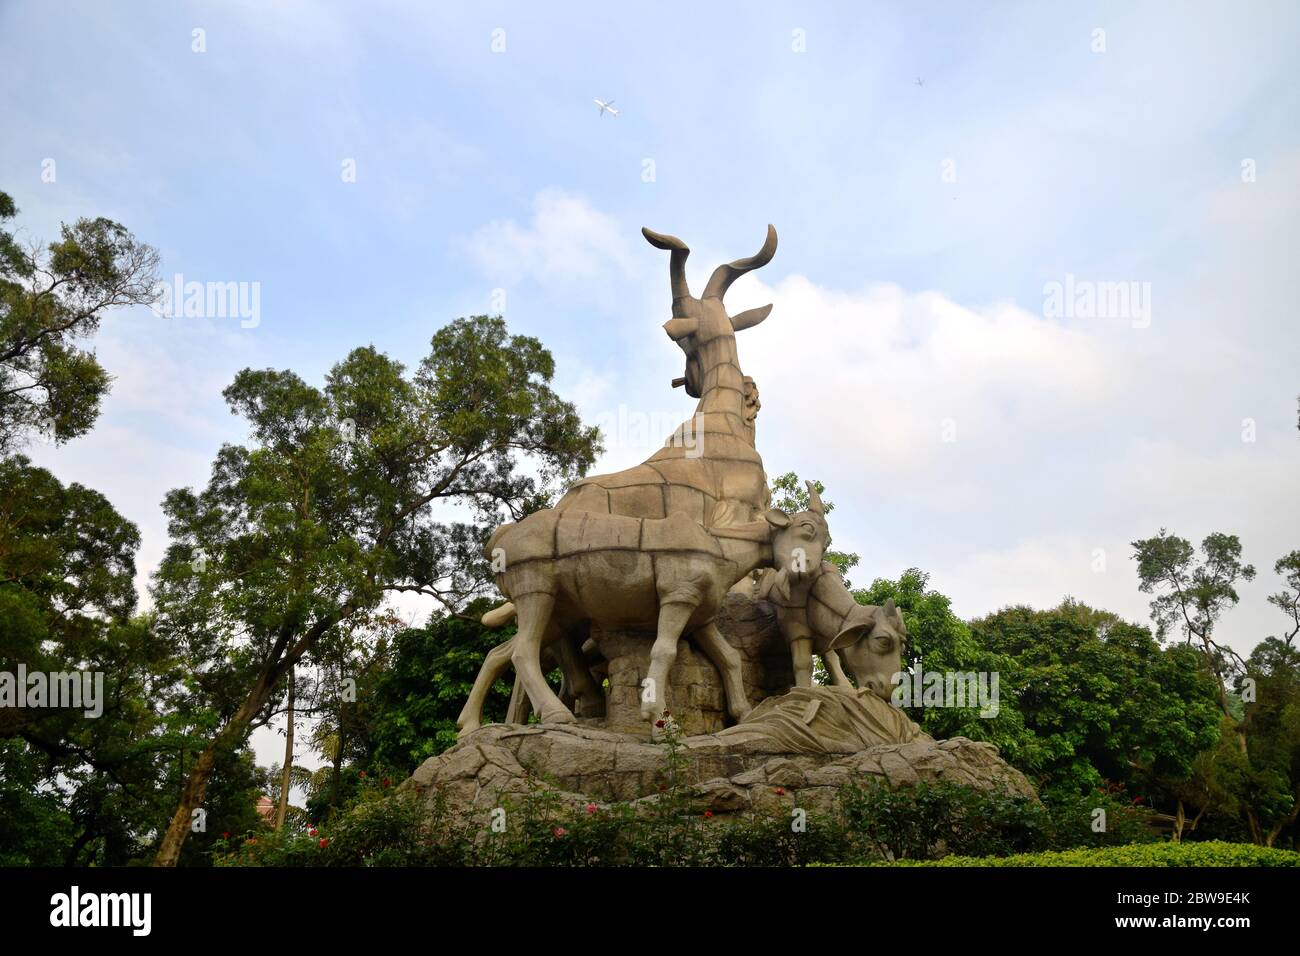 La scultura Five Rams si trova in cima alla collina di Yuexiu nel parco di Yuexiu a Guangzhou, rappresenta i cinque arieti che hanno dato alla città il suo soprannome di "Città dei Rams" Foto Stock